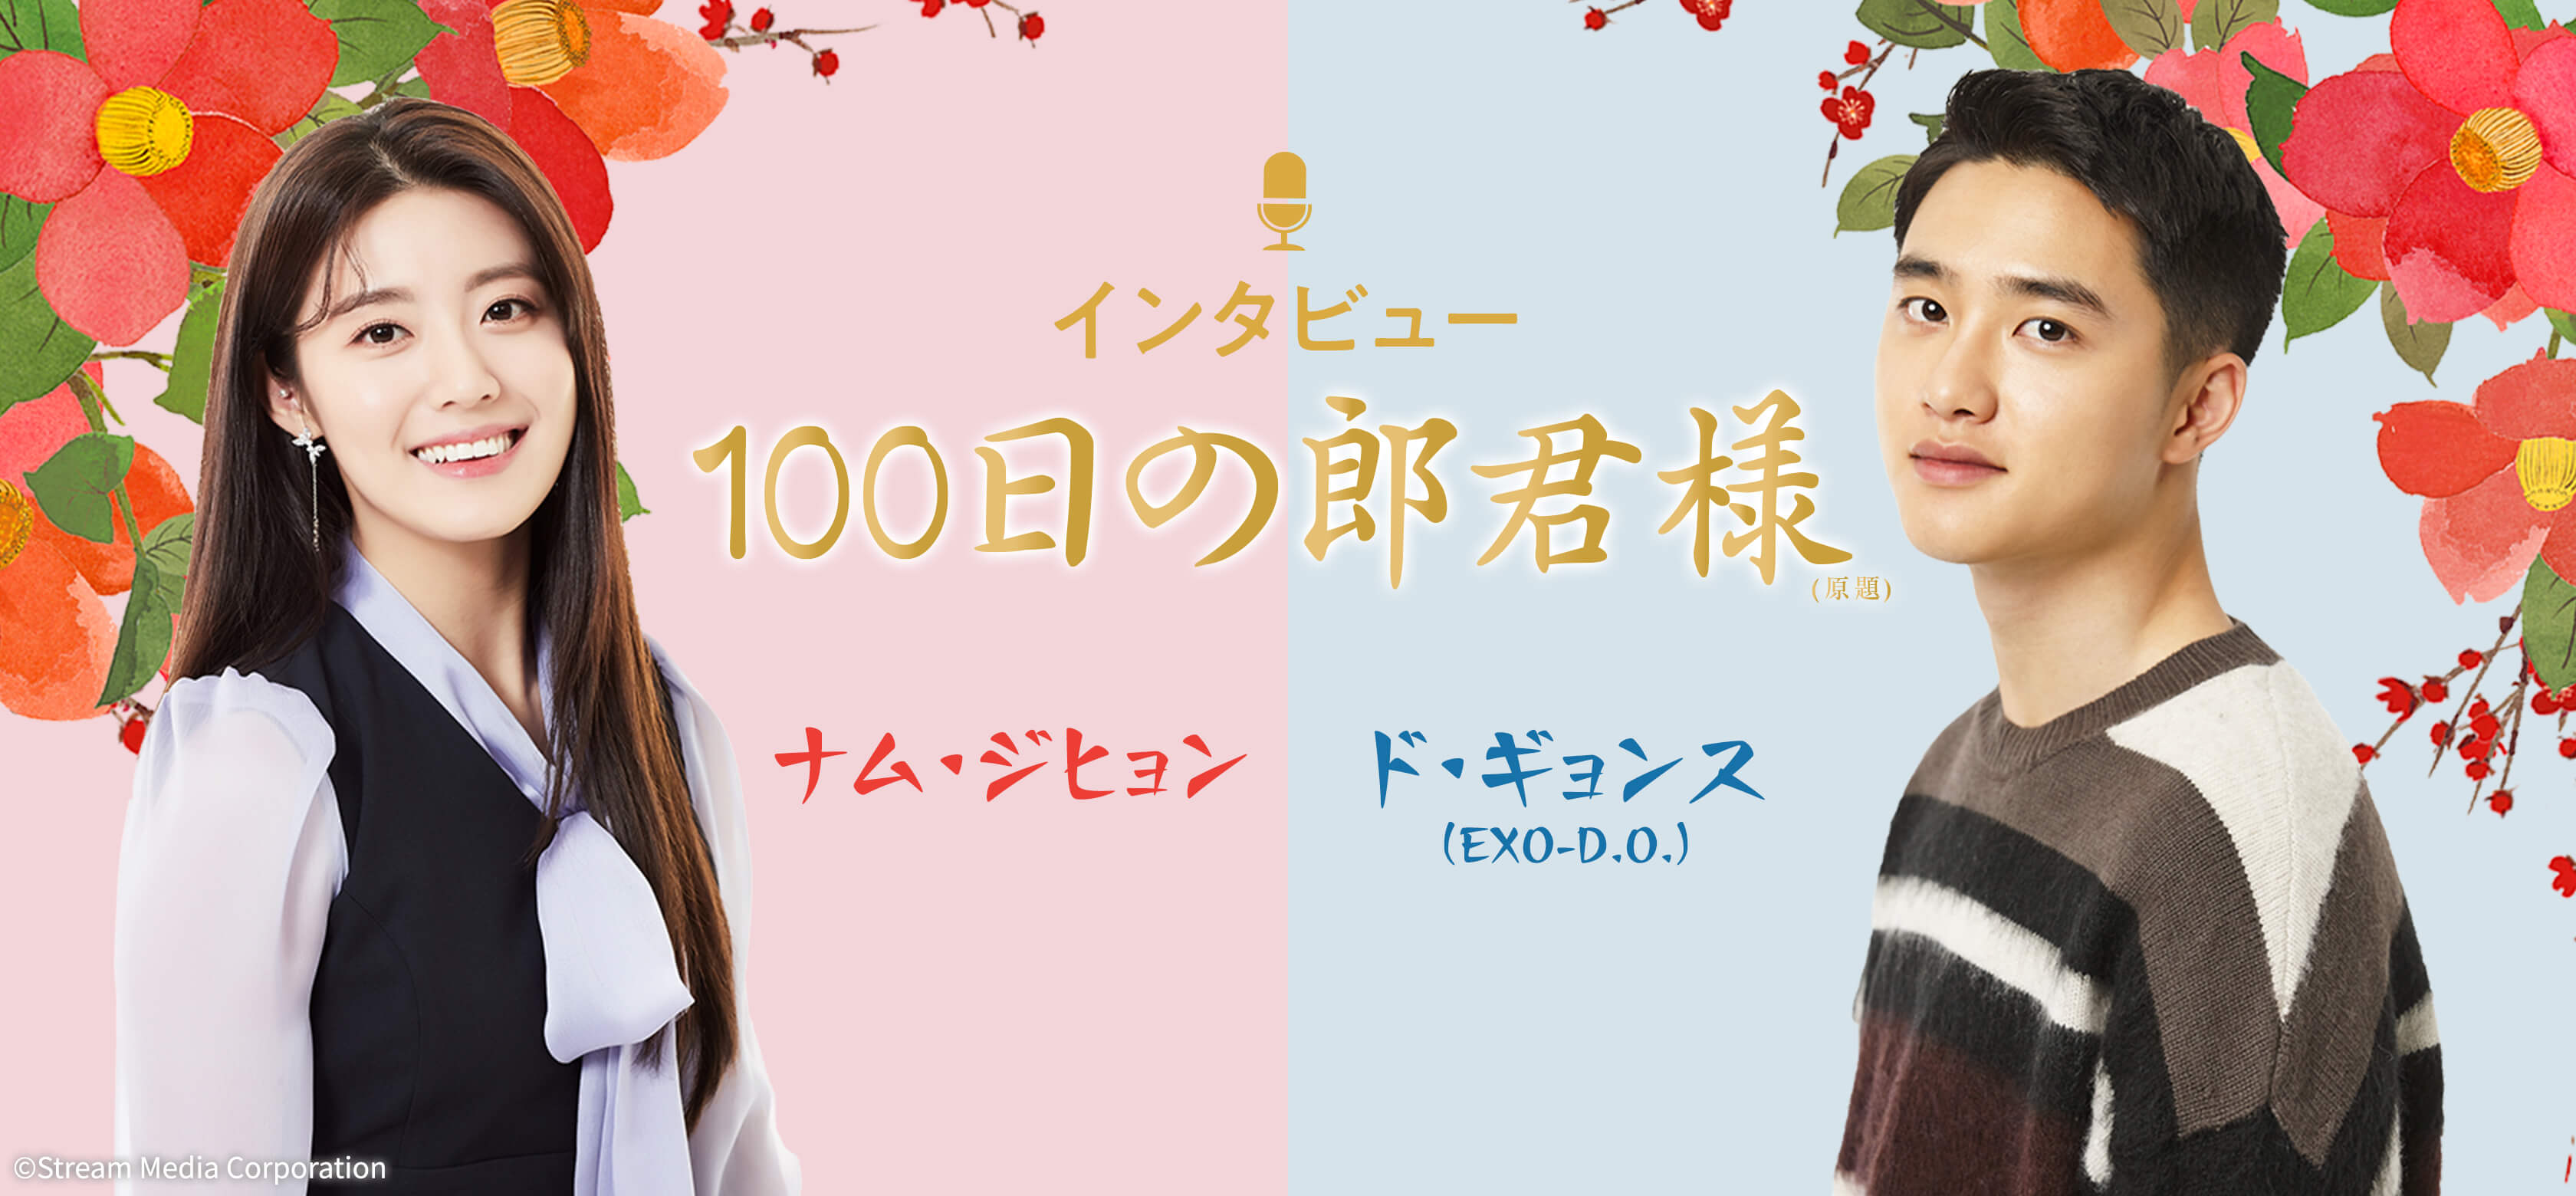 100日の郎君様」 ド・ギョンス(EXO-D.O.)、ナム・ジヒョン 